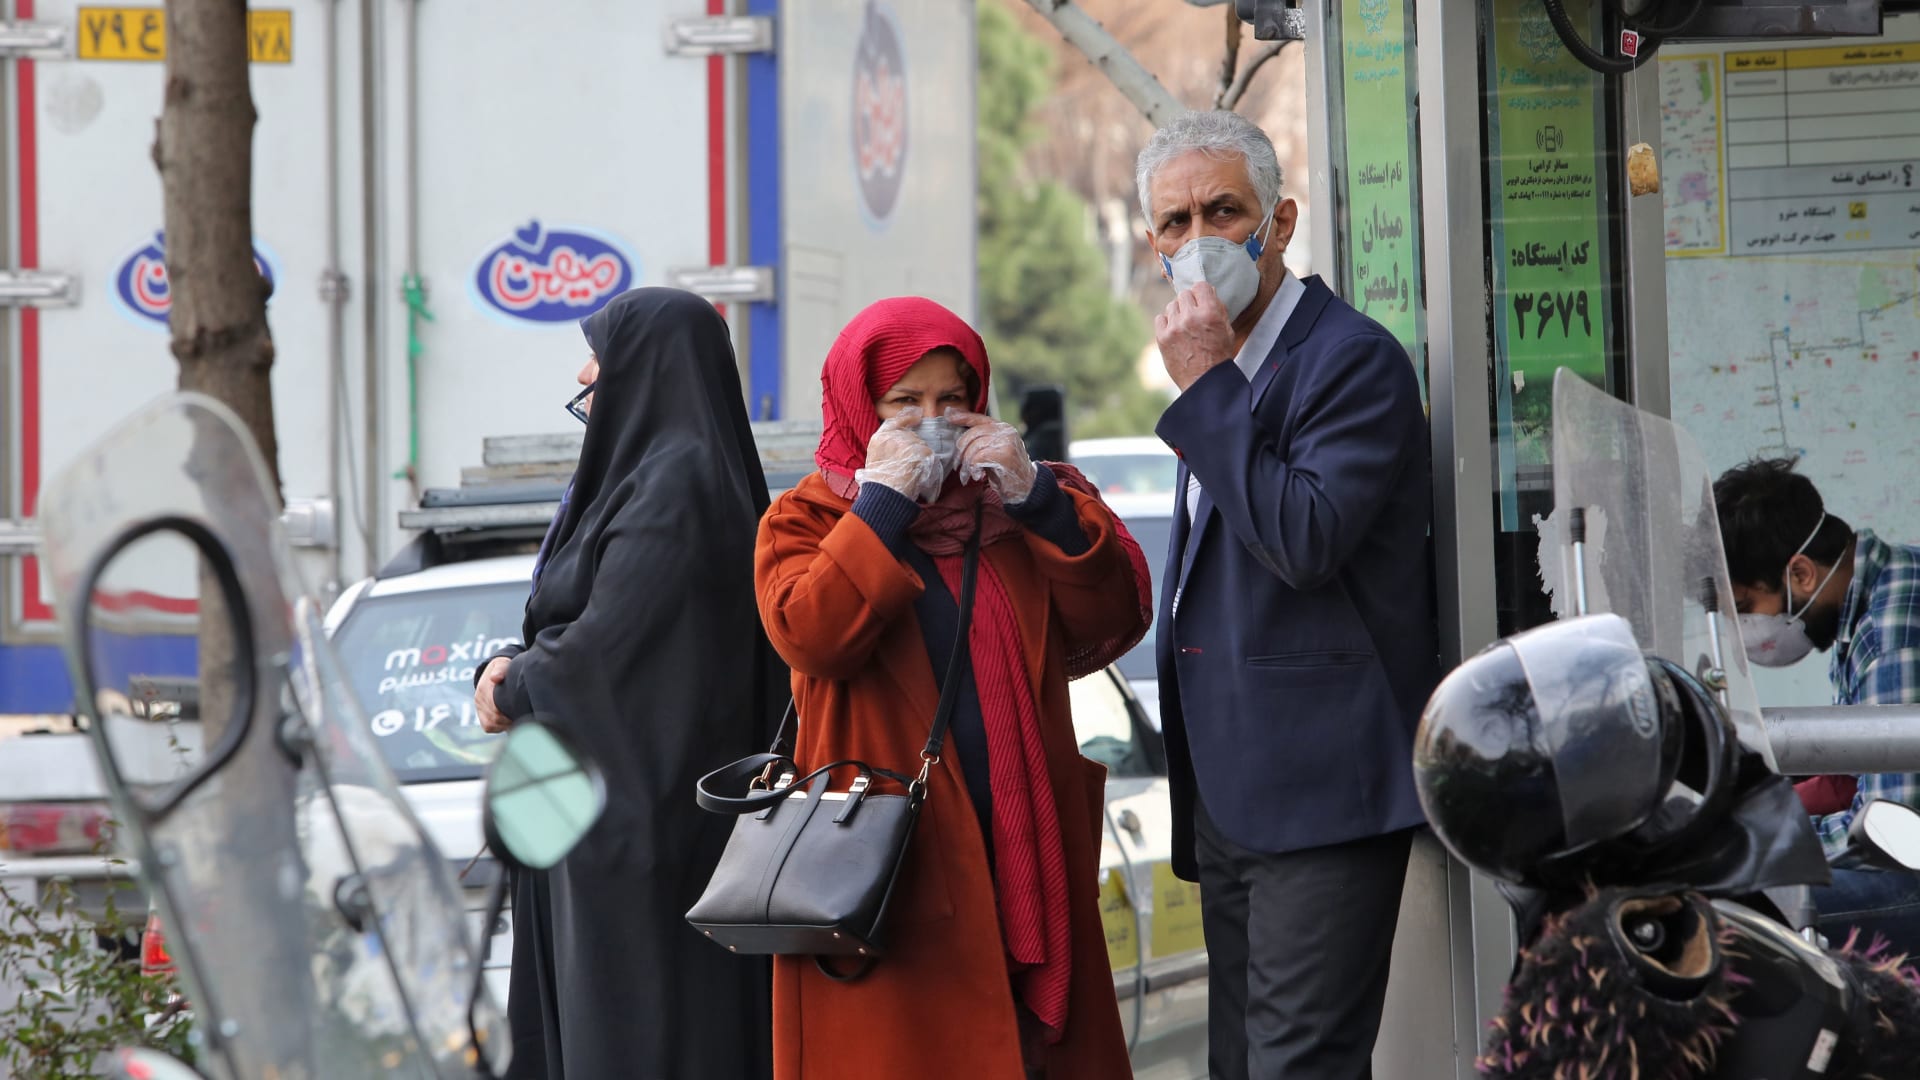 إصابات فيروس كورونا في إيطاليا الأكبر خارج آسيا.. والسلطات تبحث عن "المريض صفر"